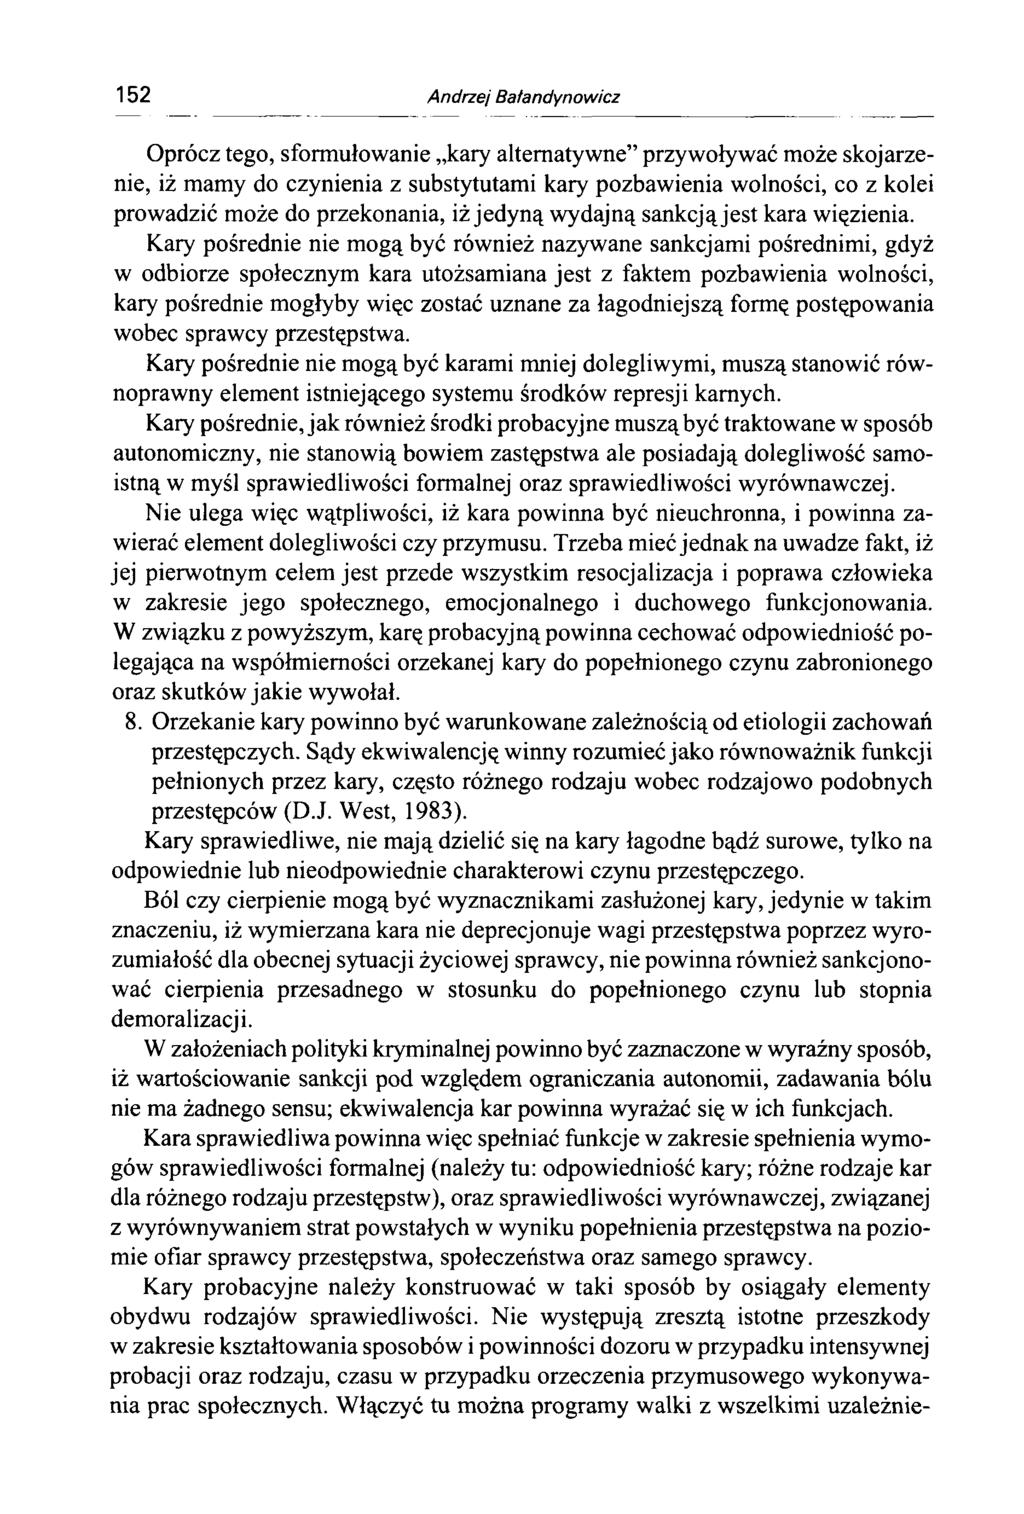 152 Andrzej Bałandynowicz Oprócz tego, sformułowanie kary alternatywne przywoływać może skojarzenie, iż mamy do czynienia z substytutami kary pozbawienia wolności, co z kolei prowadzić może do